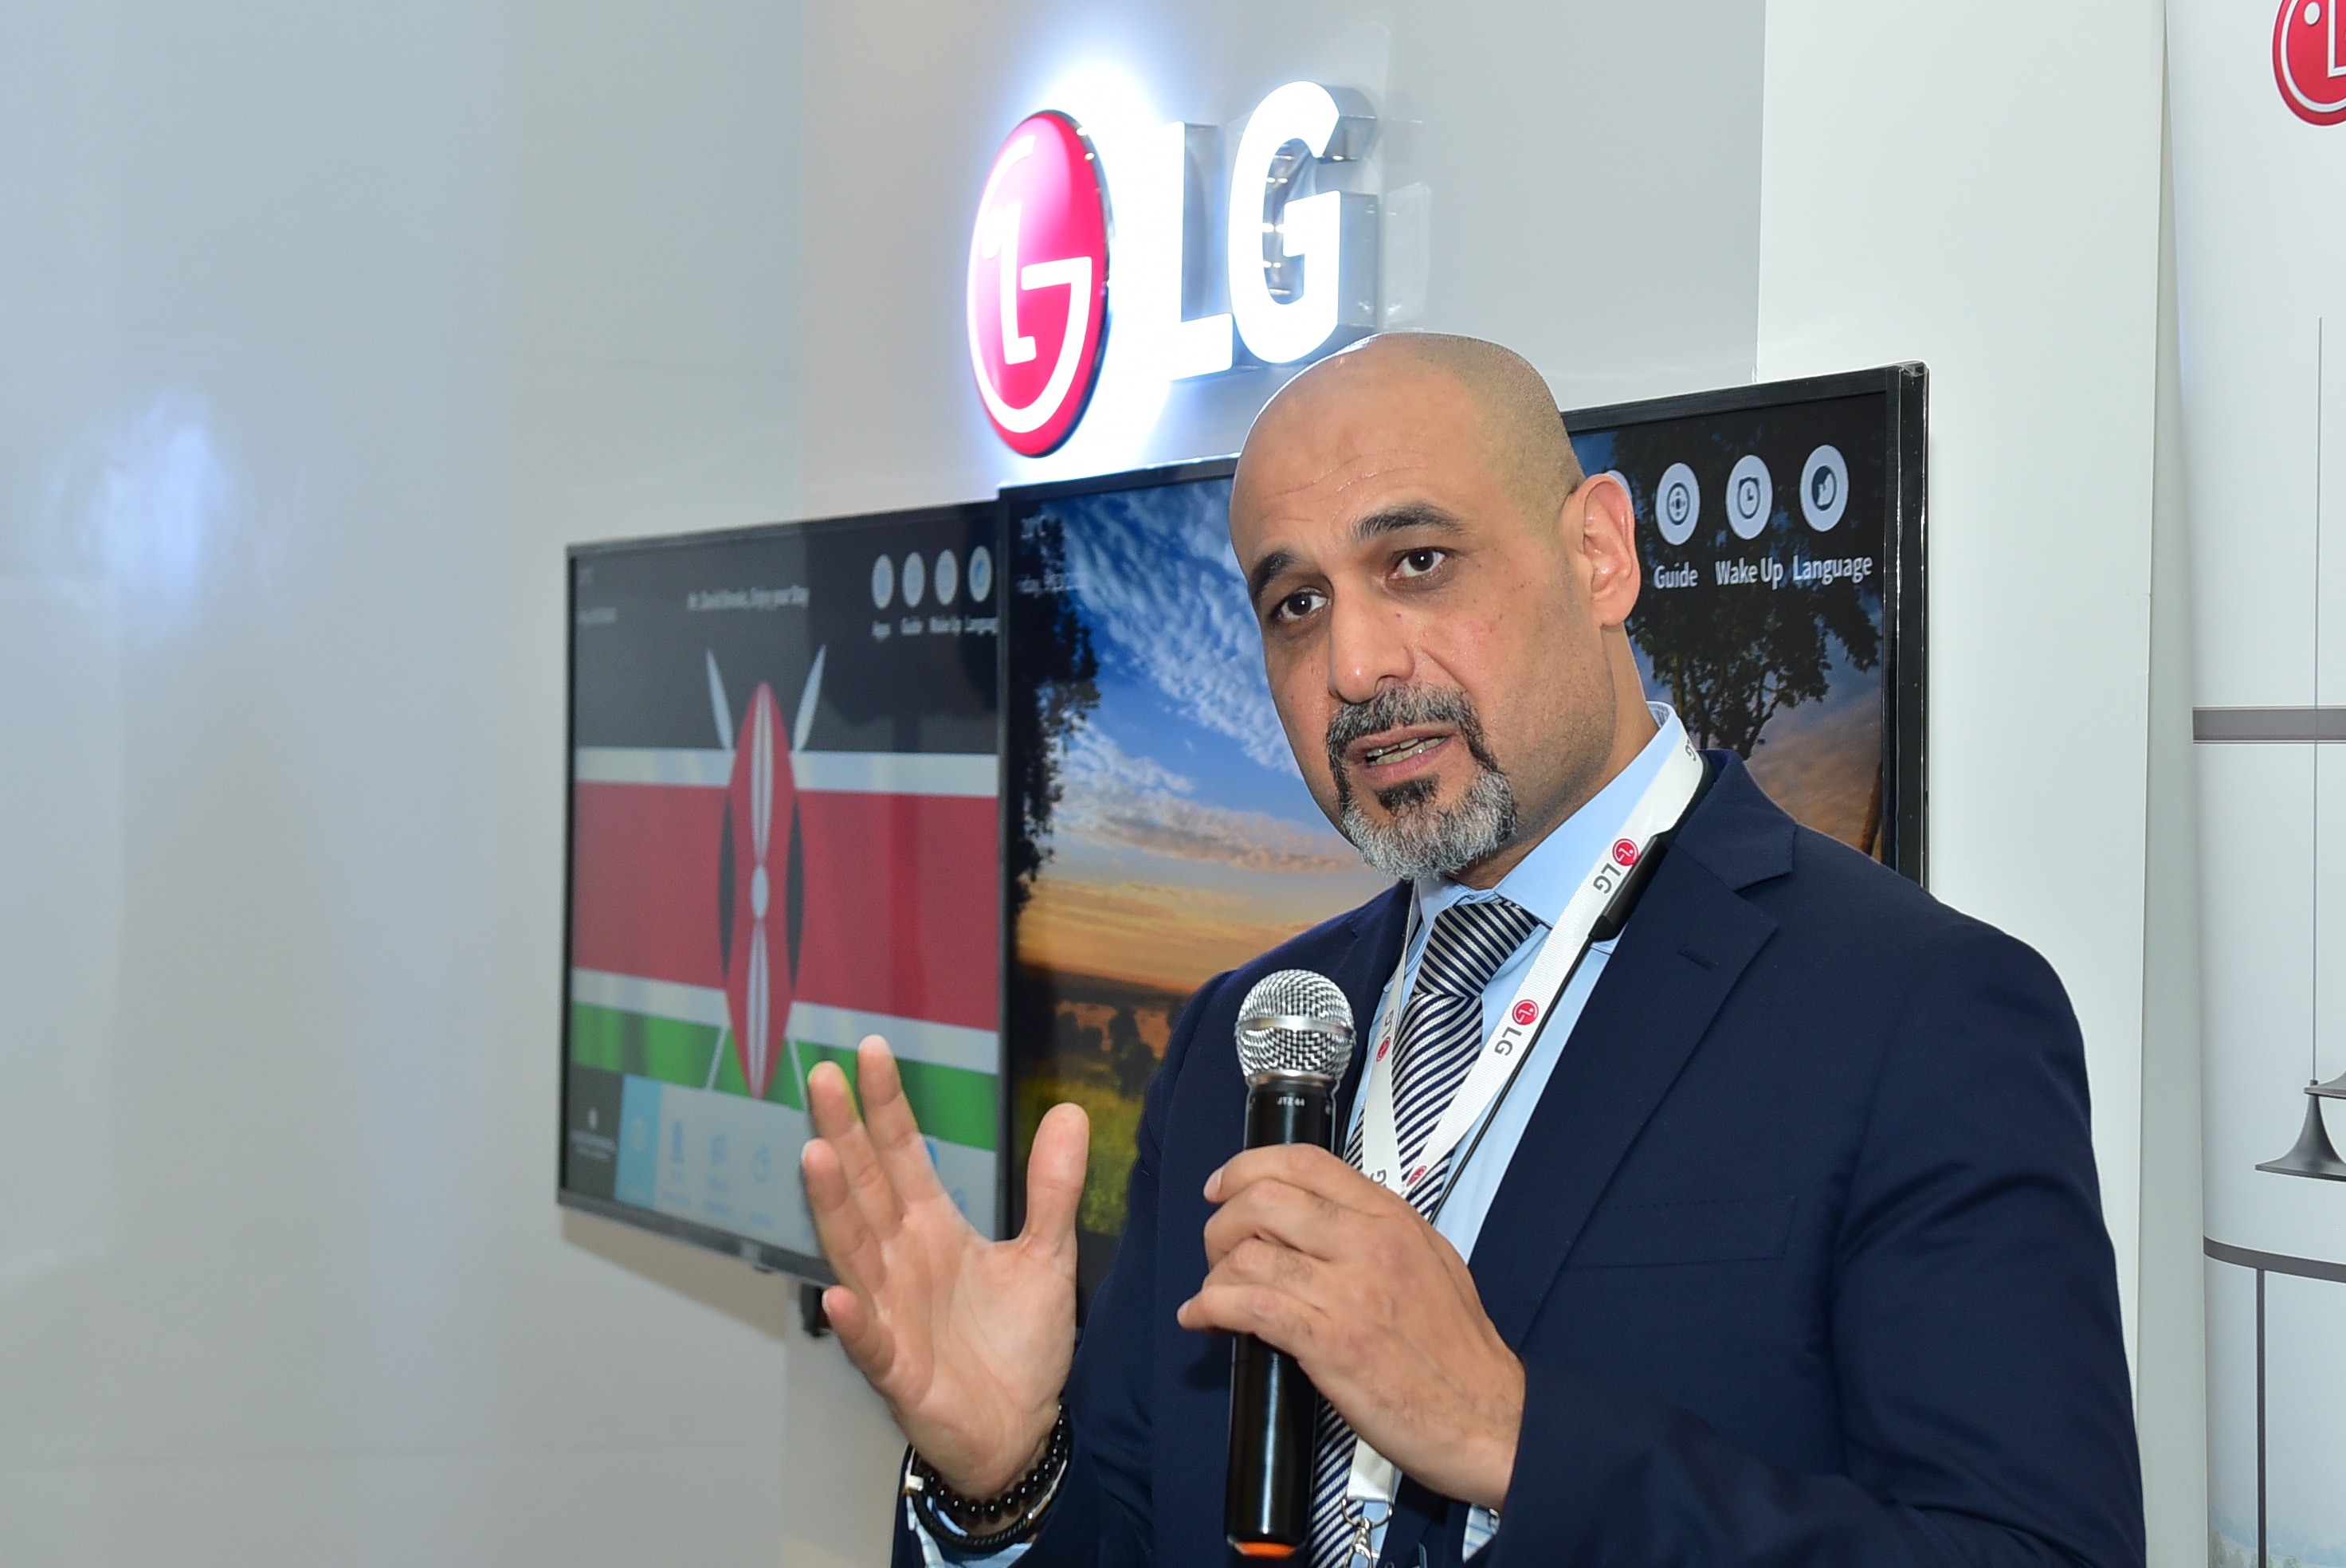 LG electronics set to reward Uganda's long distance running